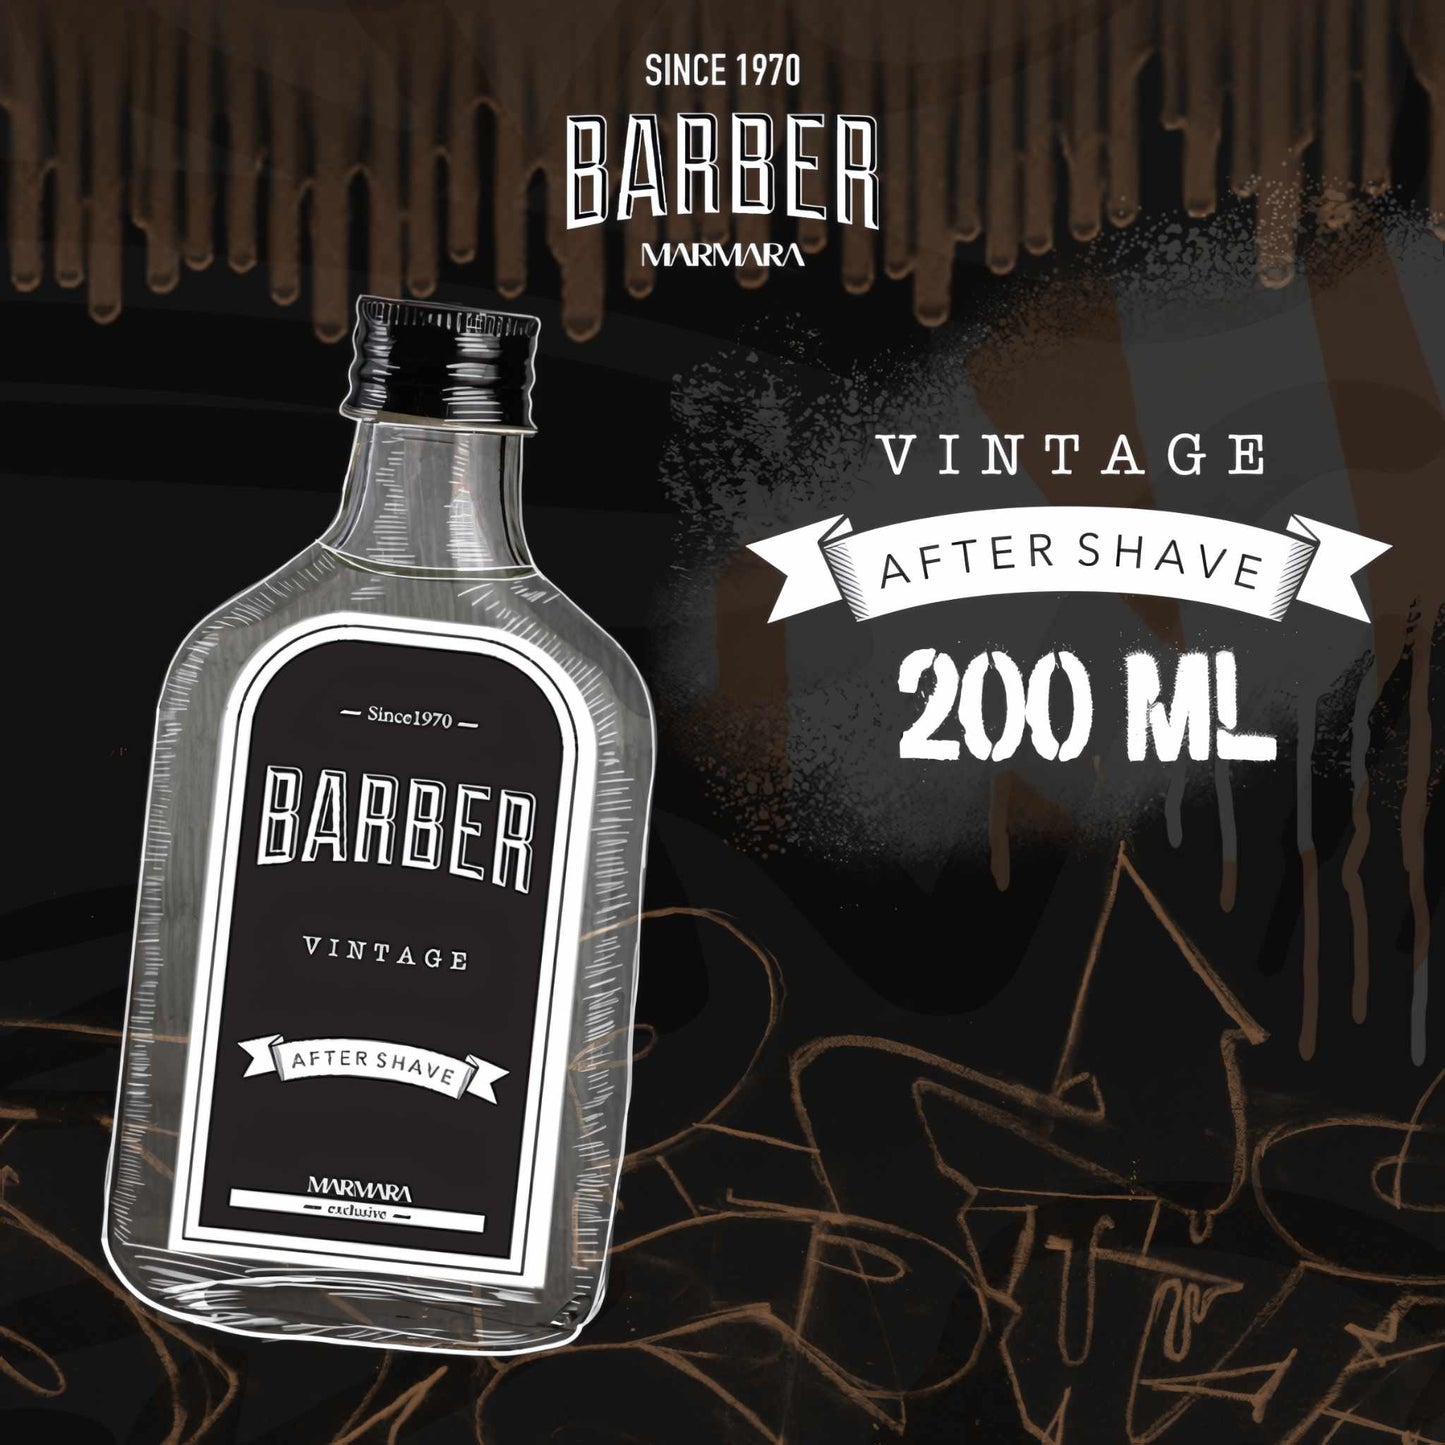 Marmara Vintage After Shave Barber Cologne 200 ml